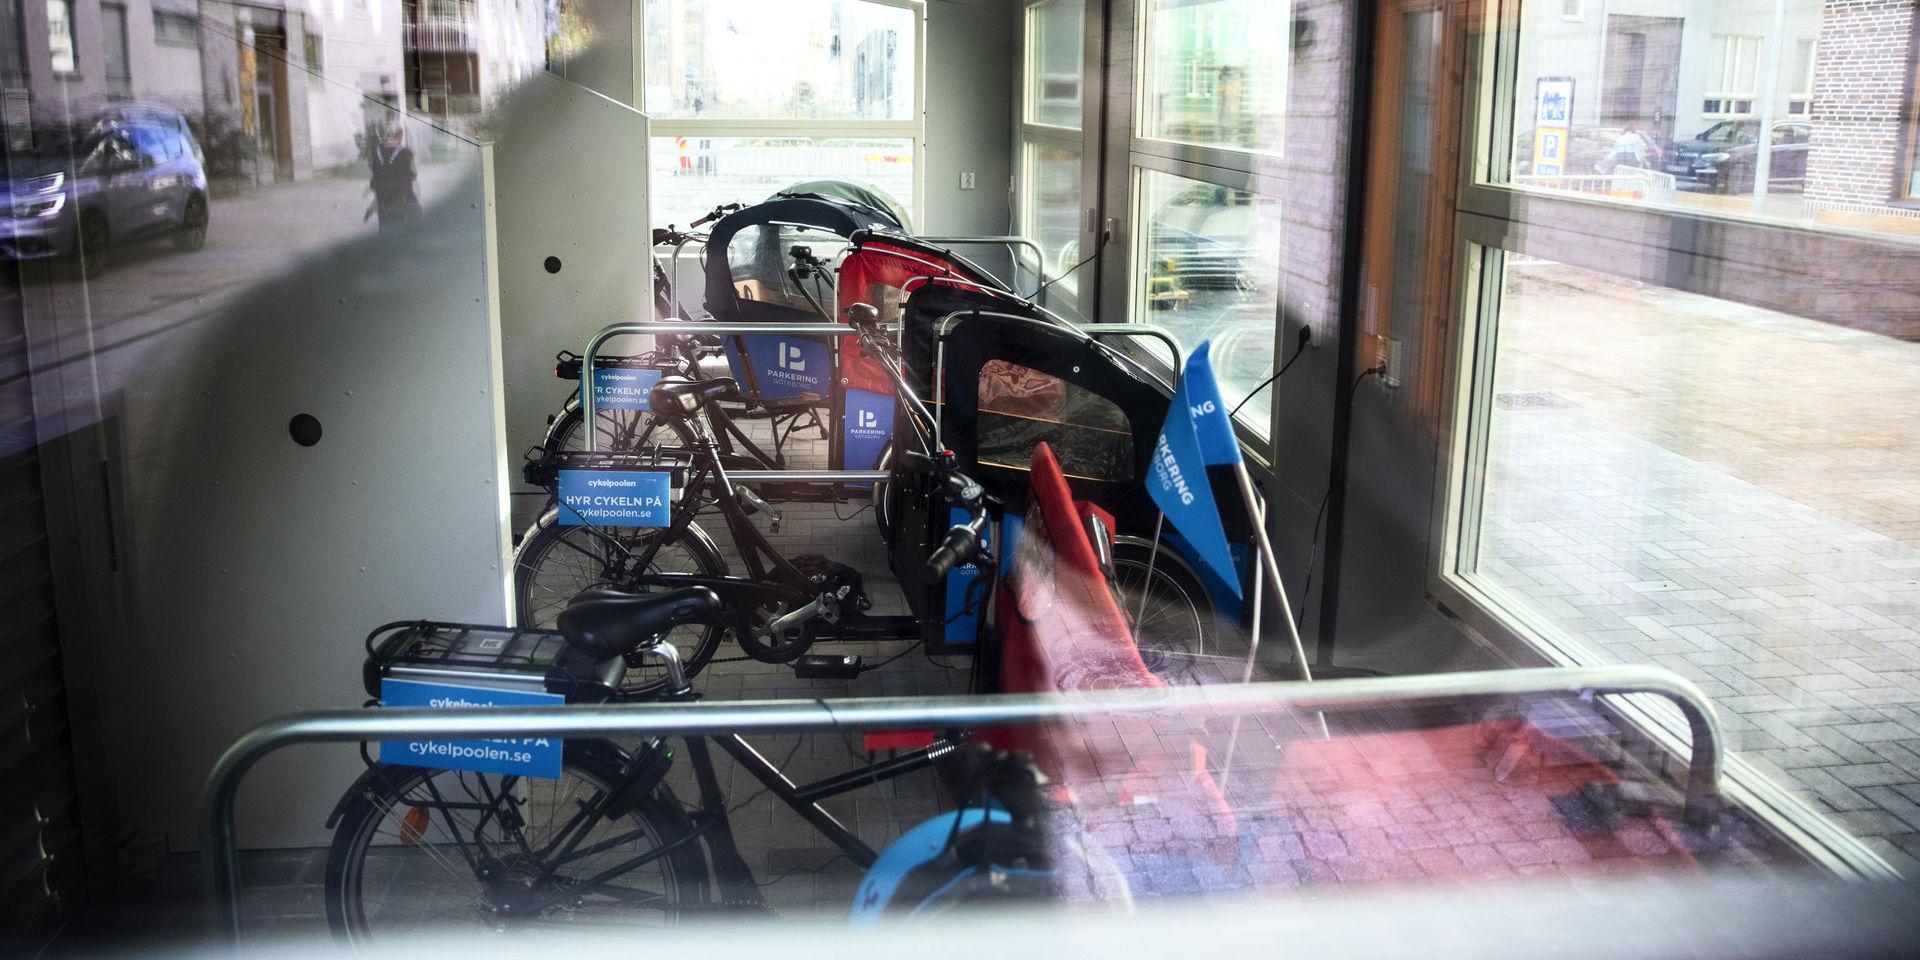 Cyklarna finns i en liten byggnad i korsningen Gamla Tuvevägen/Långängen.